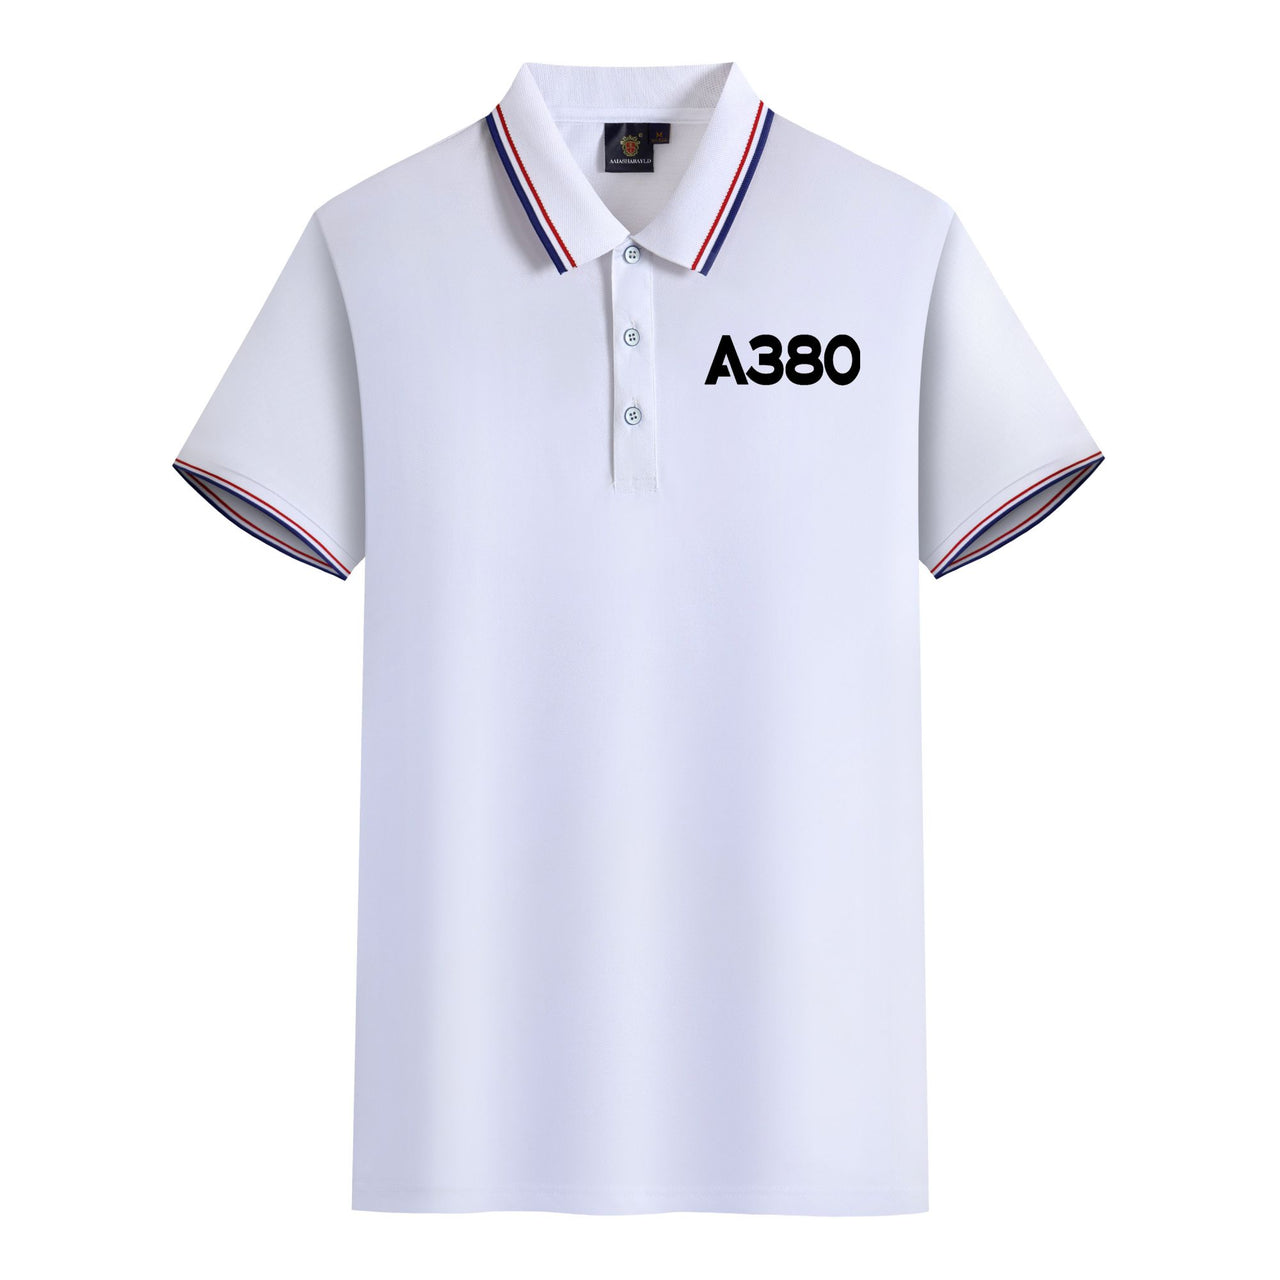 A380 Flat Text Designed Stylish Polo T-Shirts